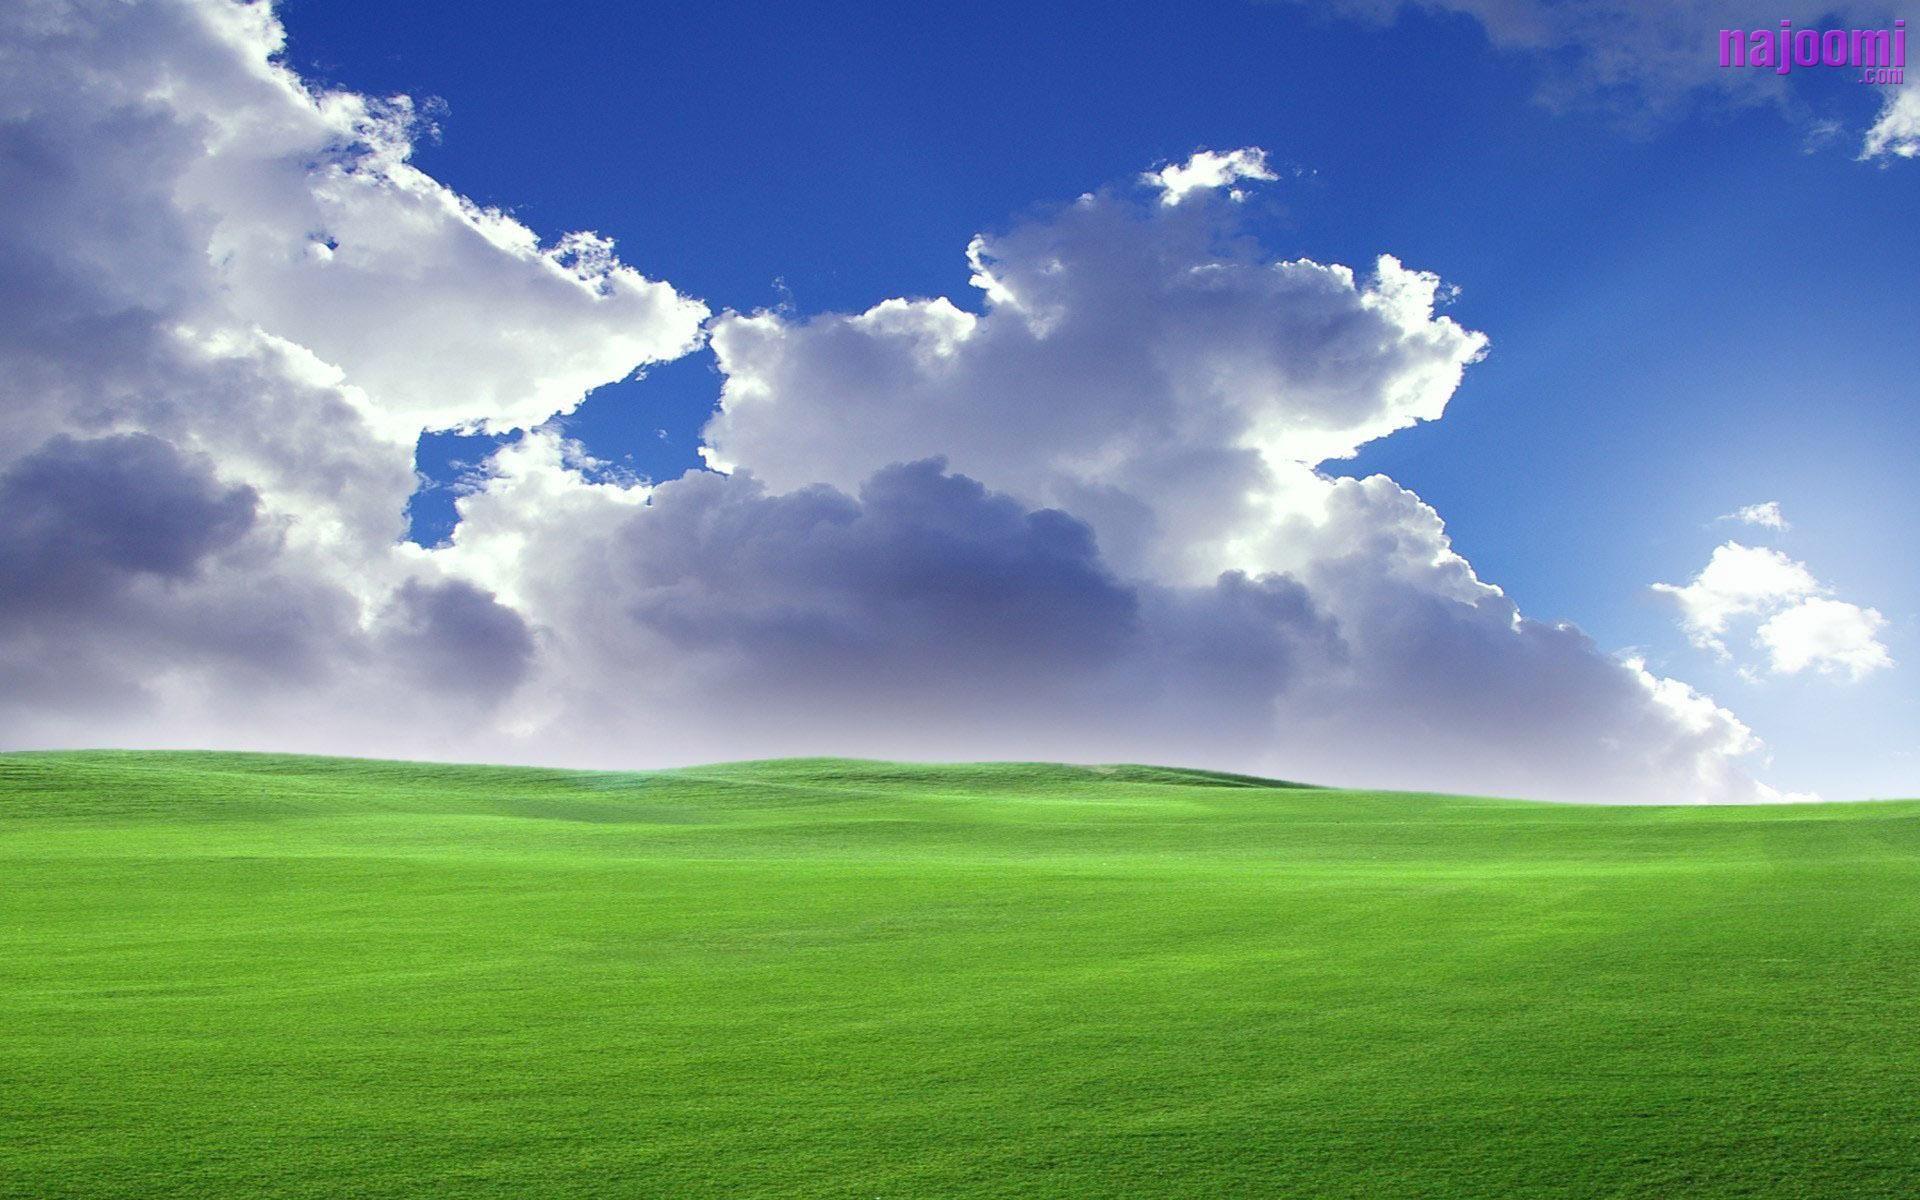 Hình nền cánh đồng xanh sẽ mang đến cho bạn cảm giác thư thái và yên bình khi trở về căn nhà của mình. Hãy cùng chiêm ngưỡng vẻ đẹp hoang sơ của cánh đồng xanh trong hình nền này.